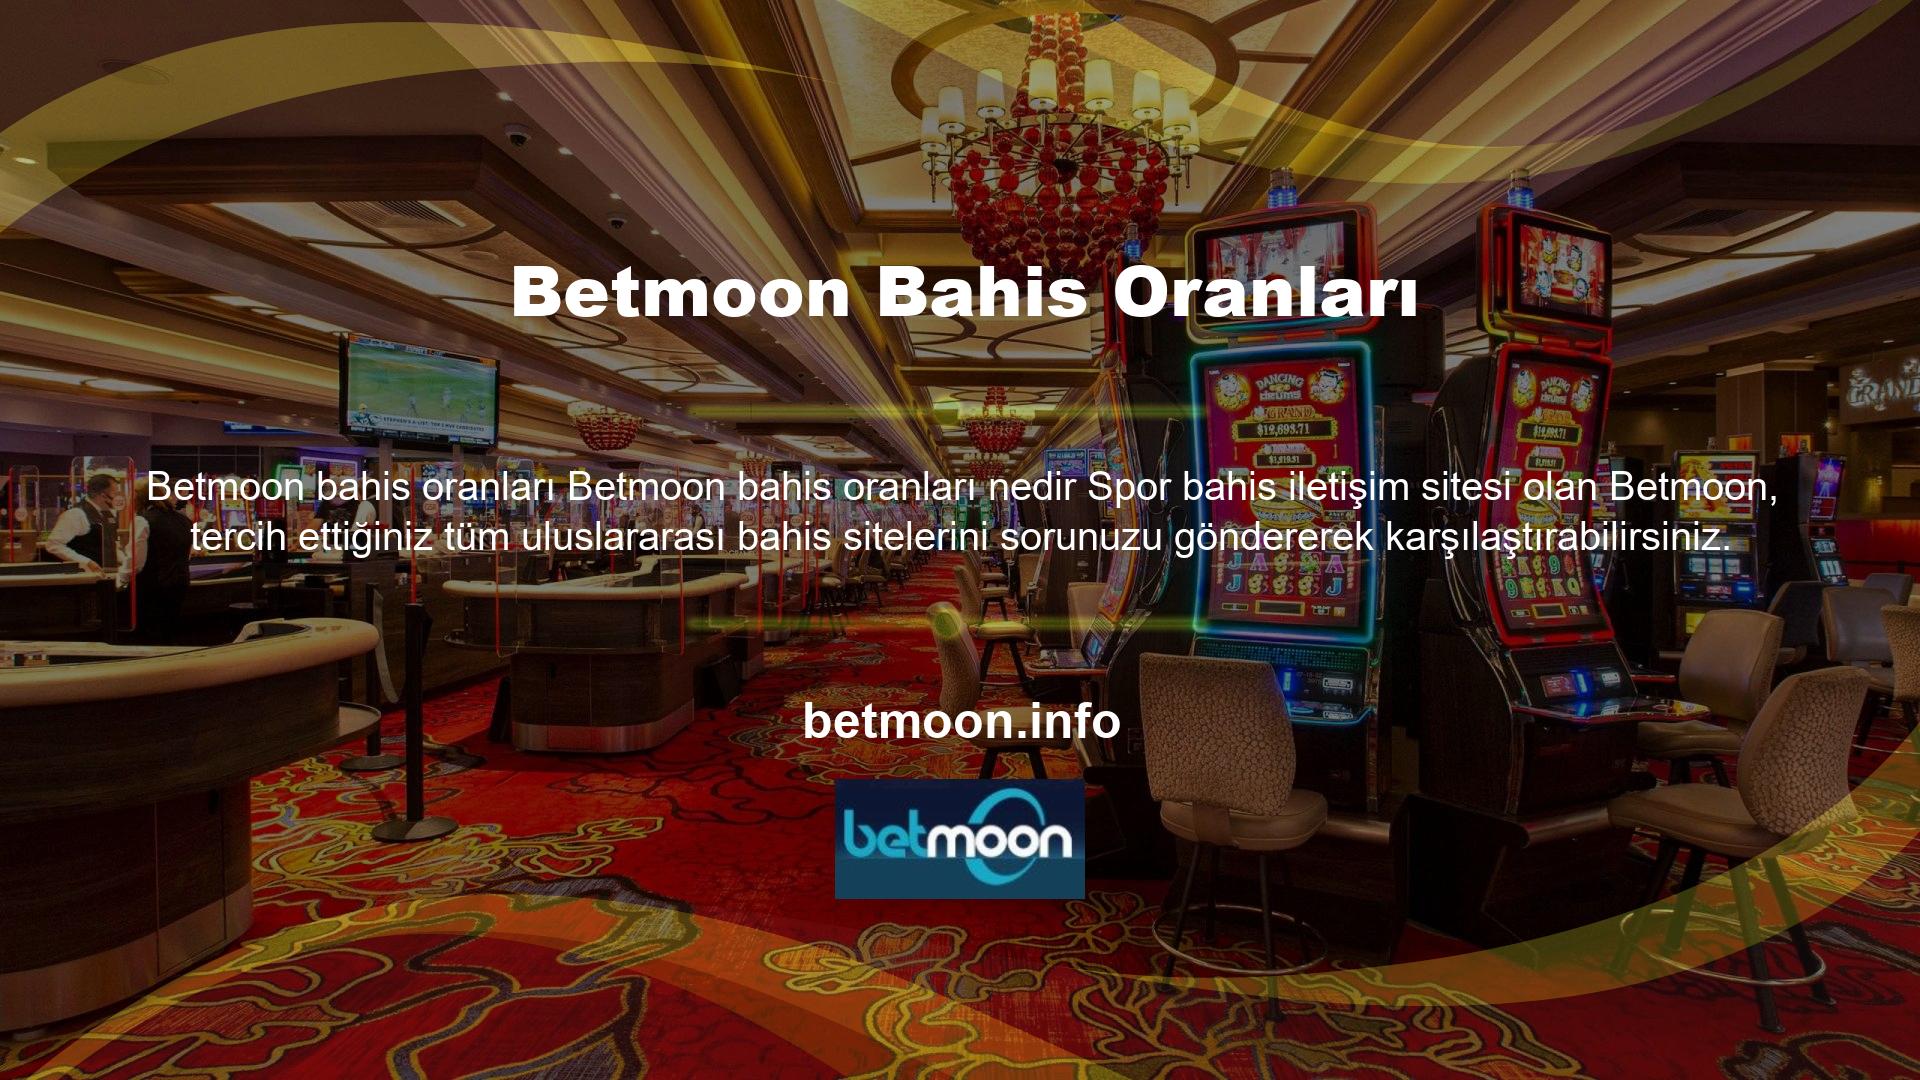 Bu hizmet sunumunun anlaşılması, çevrimiçi pazarda faaliyet gösteren uluslararası casino siteleri için ortalamanın üzerindedir